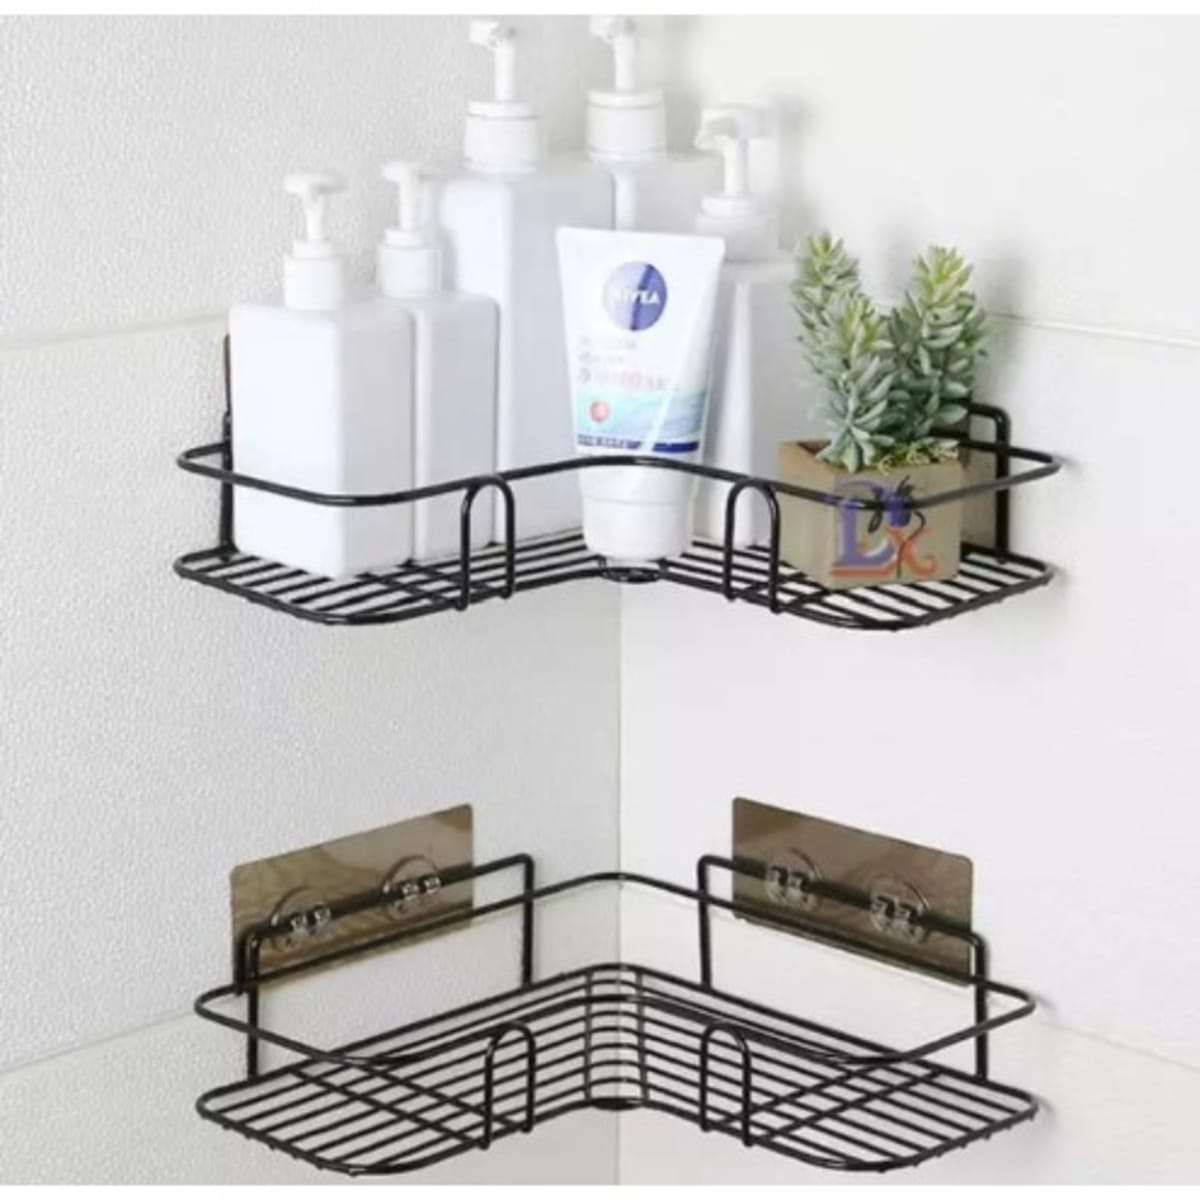 steel Self-Adhesive Metal Bathroom Corner Rack Storage Shelves